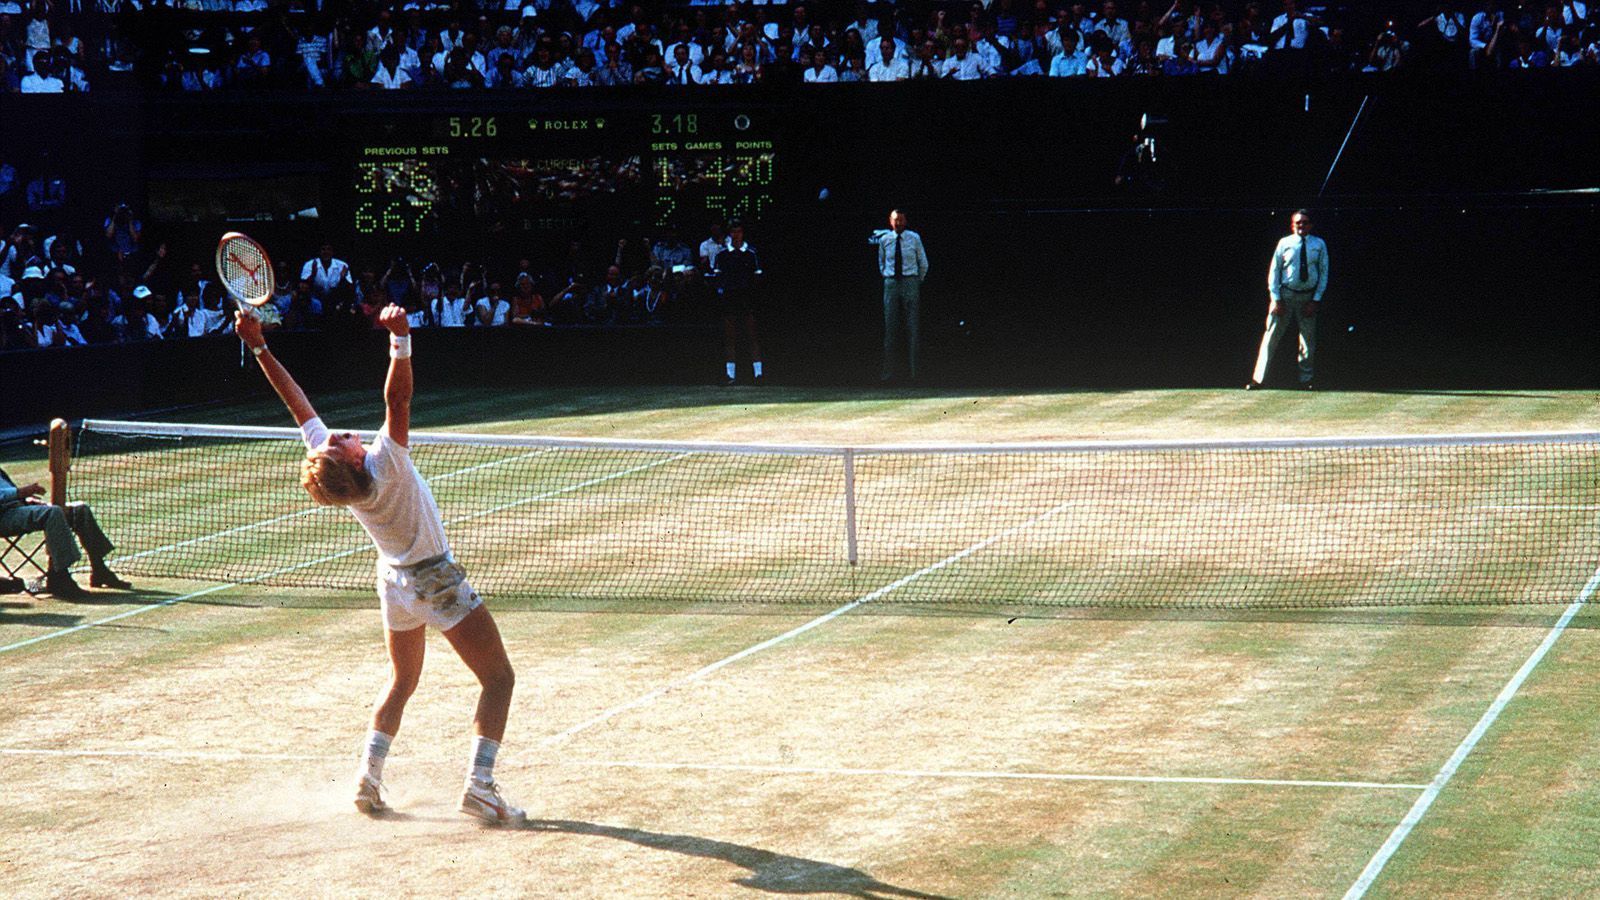 
                <strong>Mit 17 Jahren ein Weltstar</strong><br>
                Am 7. Juli 1985 wurde Becker völlig überraschend zum Weltstar. Im Alter von nur 17 Jahren gewann er das Wimbledon-Turnier und setzte sich im Finale mit 3:1 Sätzen gegen Kevin Curren durch. Becker war nicht nur der jüngste Wimbledon-Sieger der Geschichte, sondern auch der erste Deutsche und der erste ungesetzte Spieler, dem dies gelang. Gemeinsam mit Steffi Graf löste Becker in Deutschland einen Tennis-Boom aus.
              